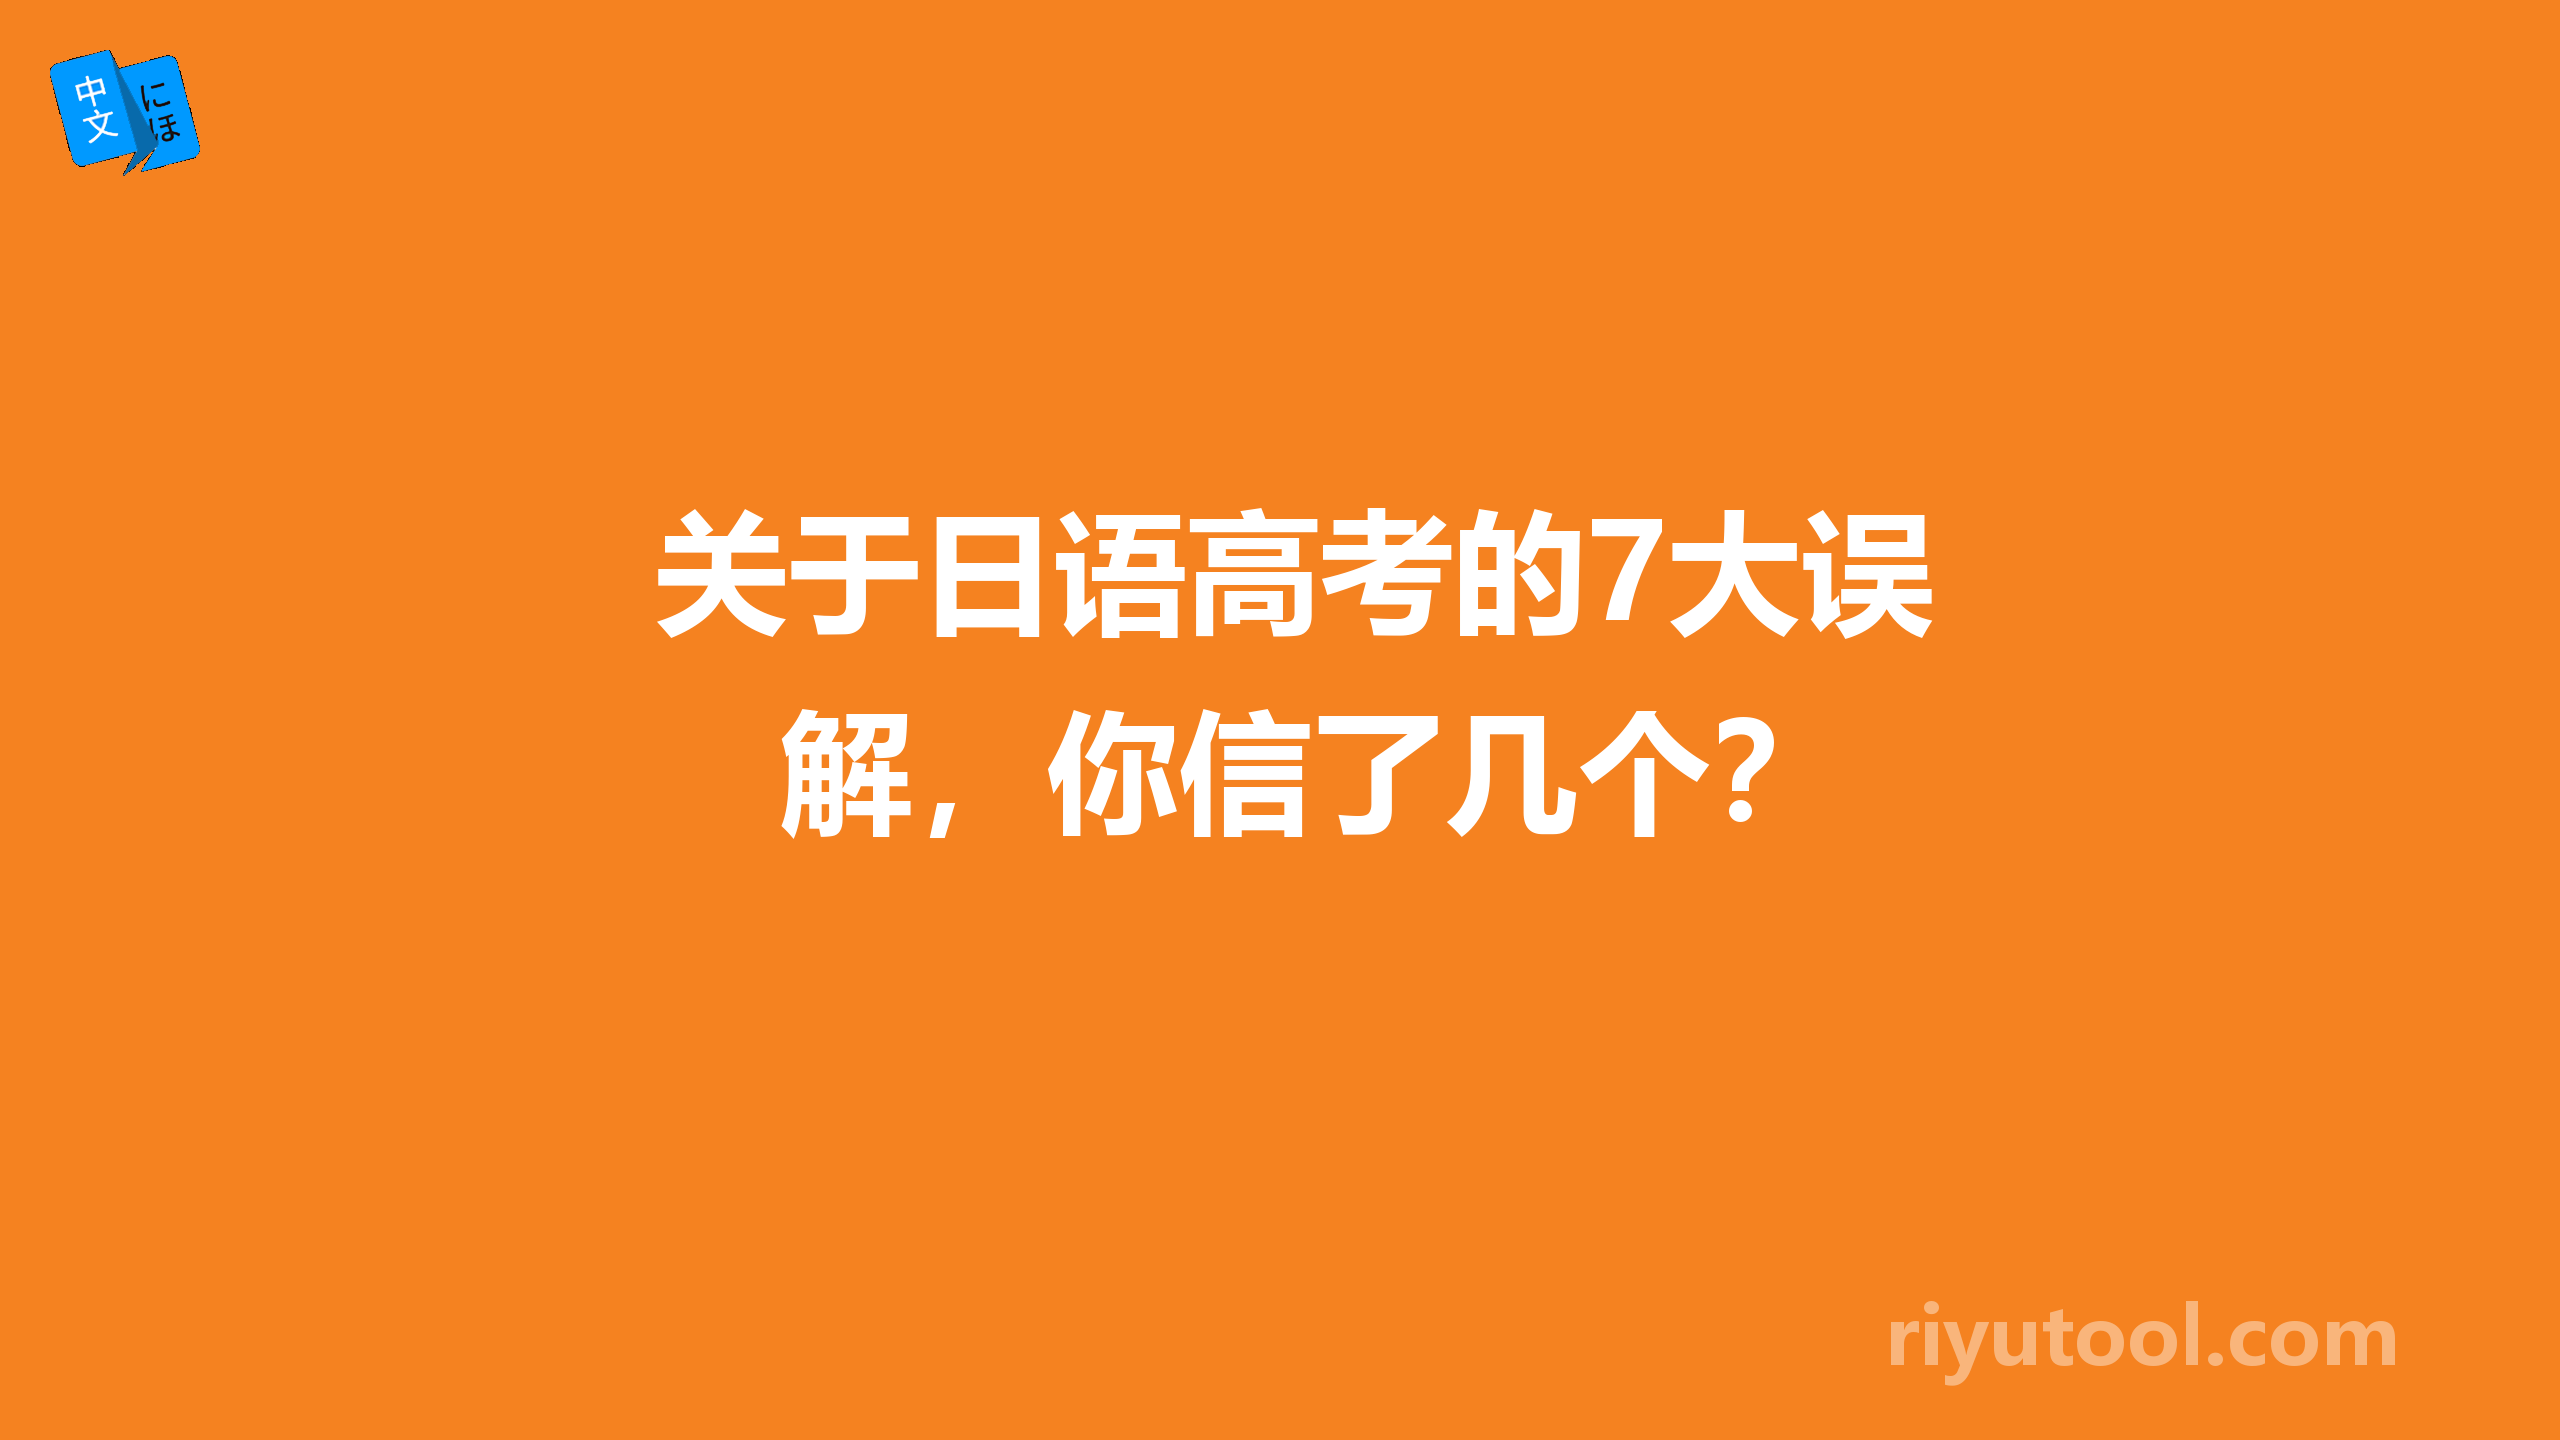 关于日语高考的7大误解，你信了几个？